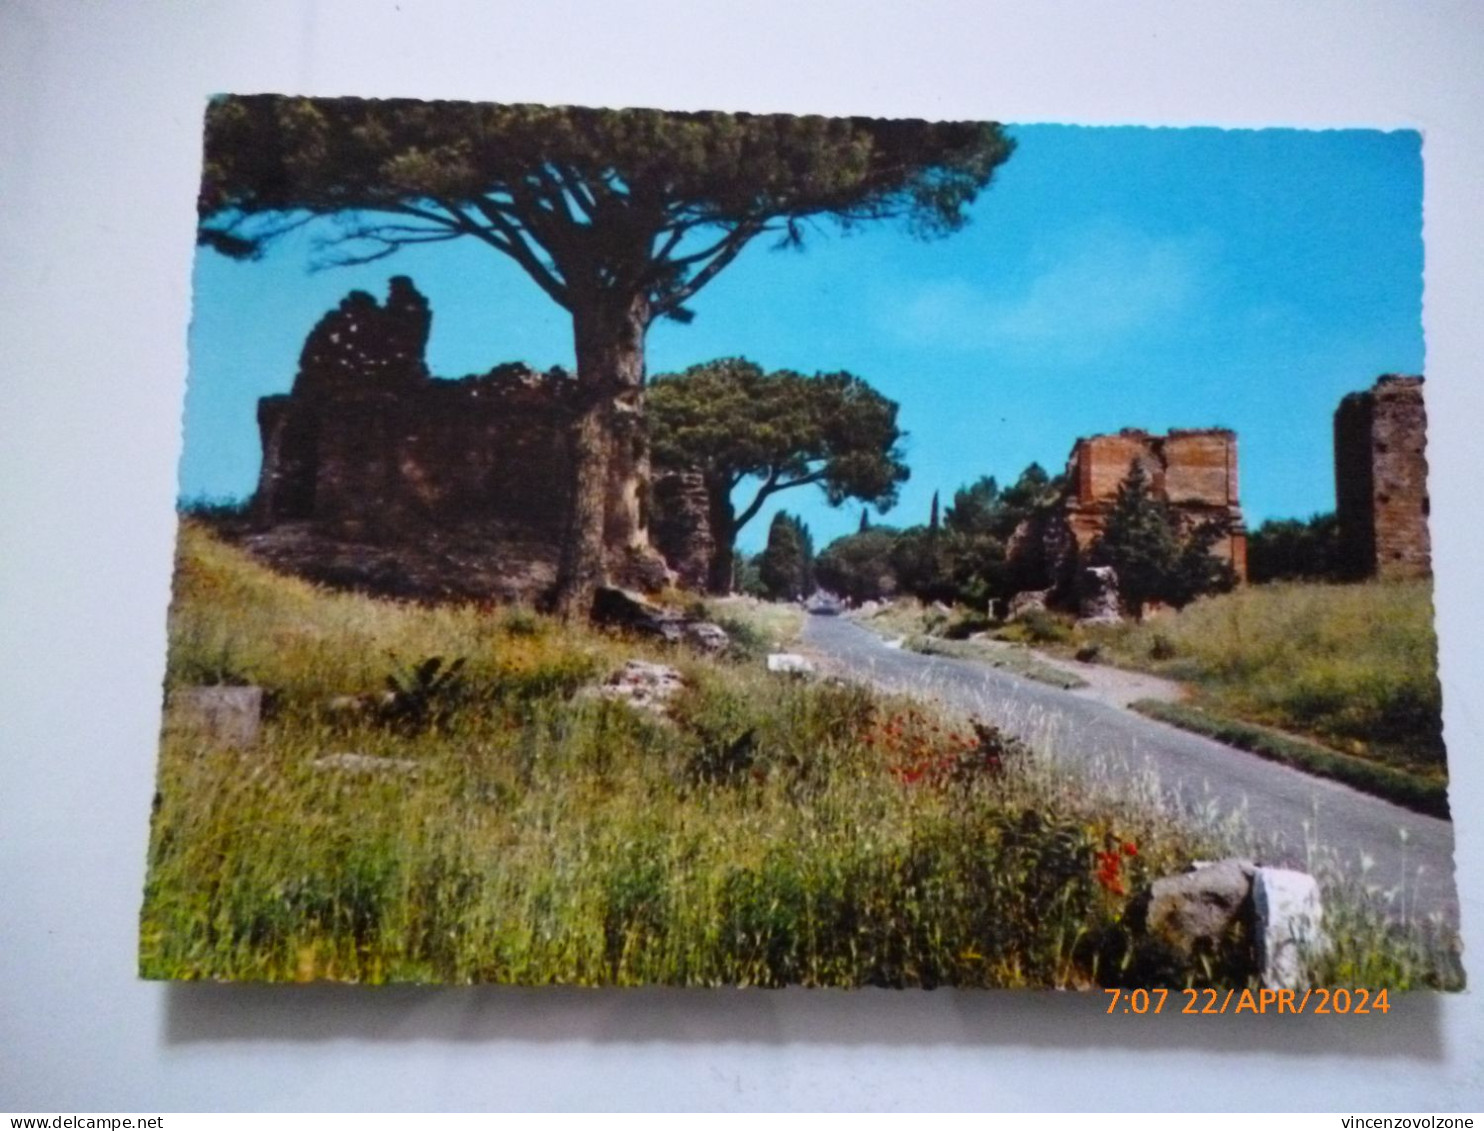 Cartolina Viaggiata "ROMA Via Appia Antica" 1968 - Andere Monumente & Gebäude